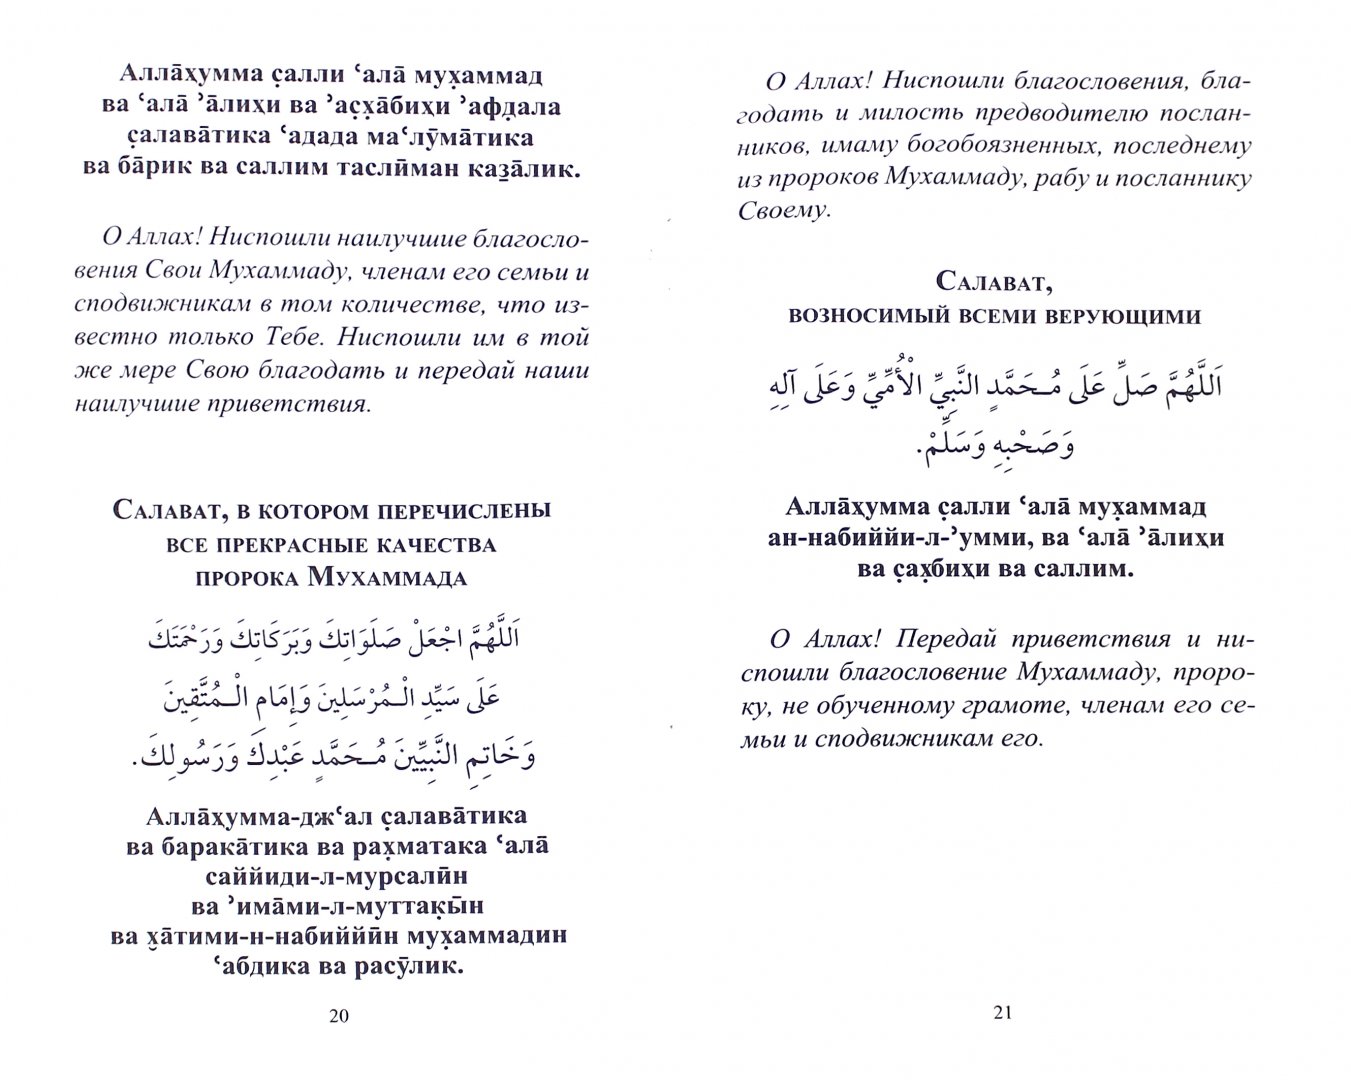 Иллюстрация 1 из 5 для Салават, приближающий к Аллаху и Его Посланнику | Лабиринт - книги. Источник: Лабиринт